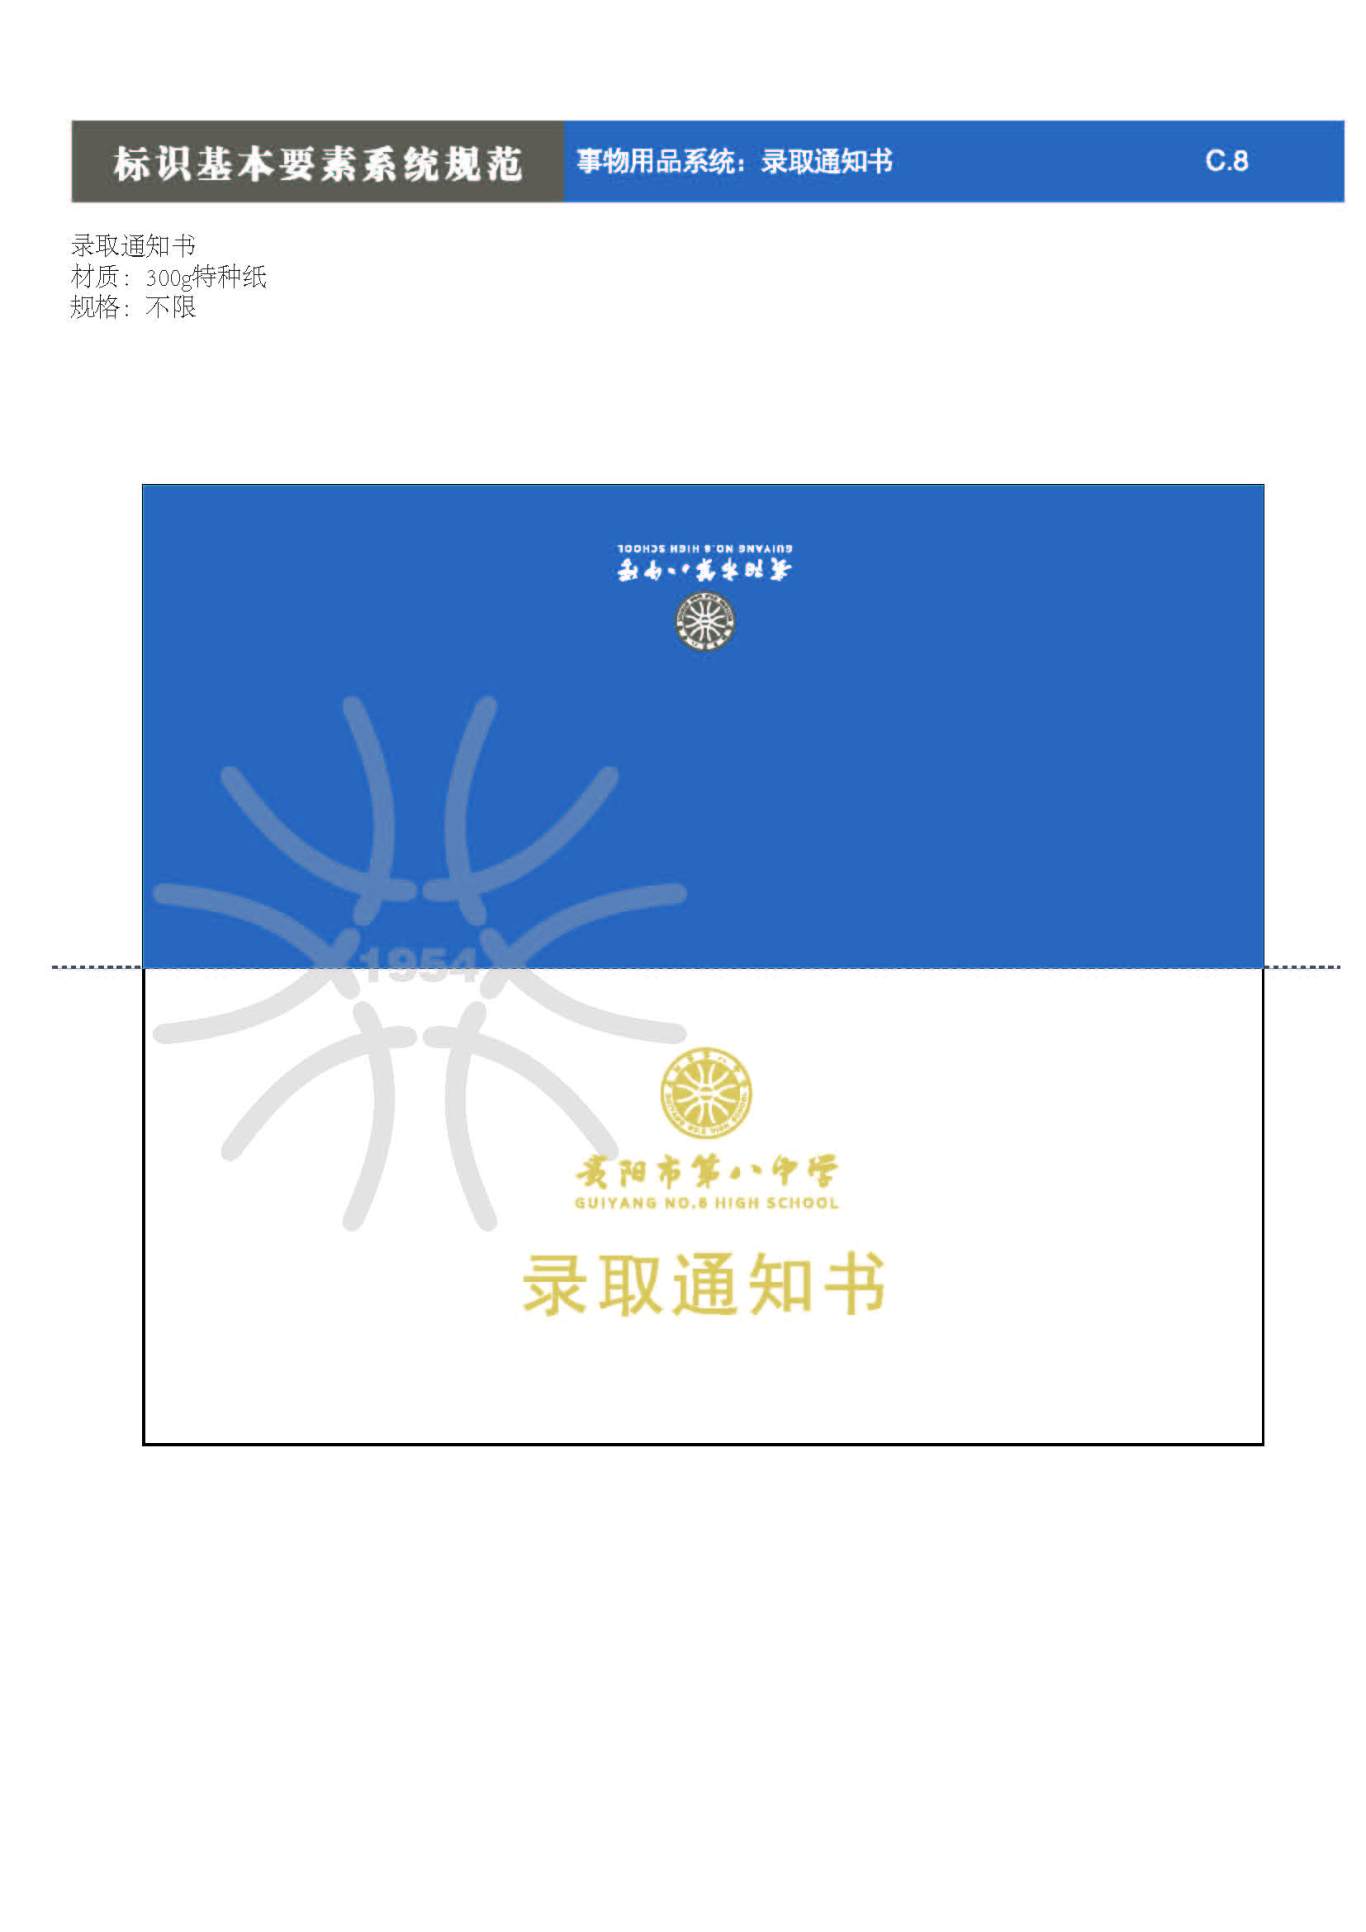 貴陽第八中學Logo、VIS設計圖62